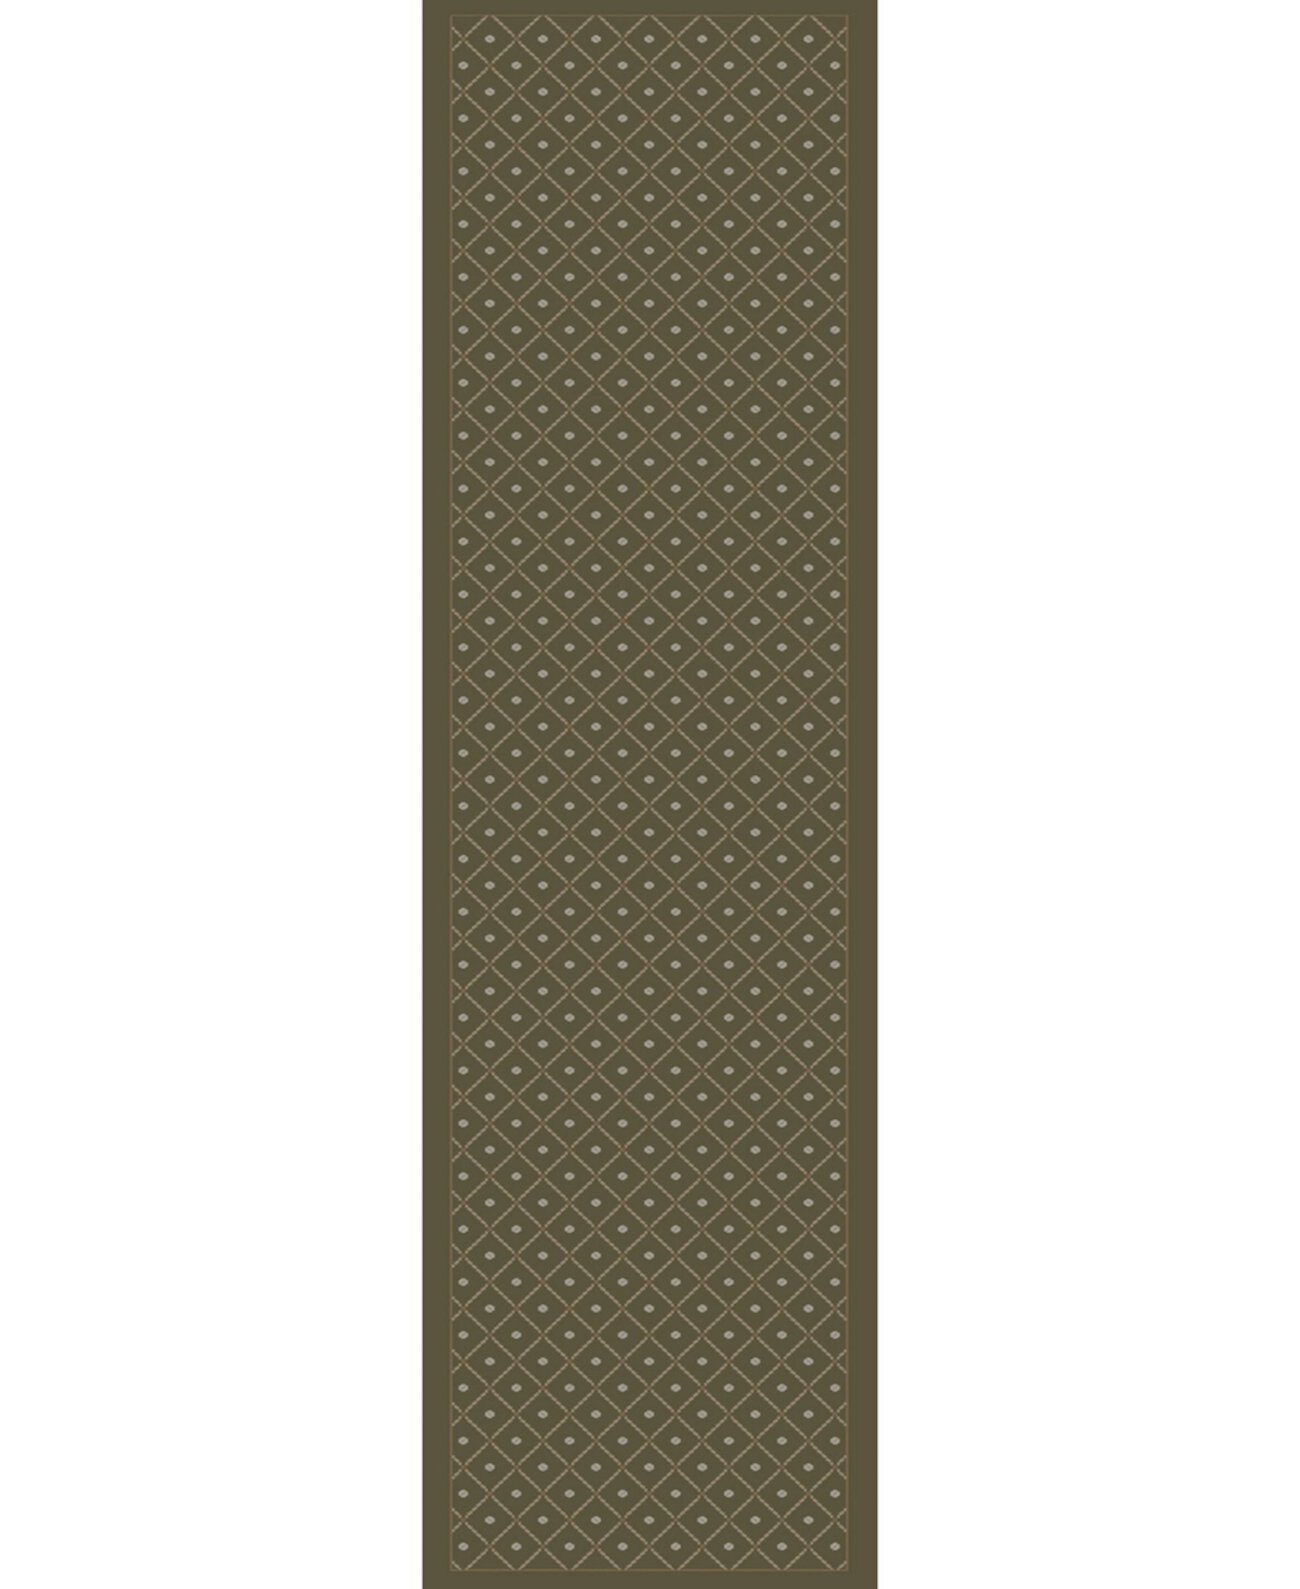 ЗАВЕРШЕНИЕ! 782/1514/SAGE Пезаро Зеленый коврик для беговых дорожек 2 фута 2 дюйма x 7 футов 7 дюймов KM Home